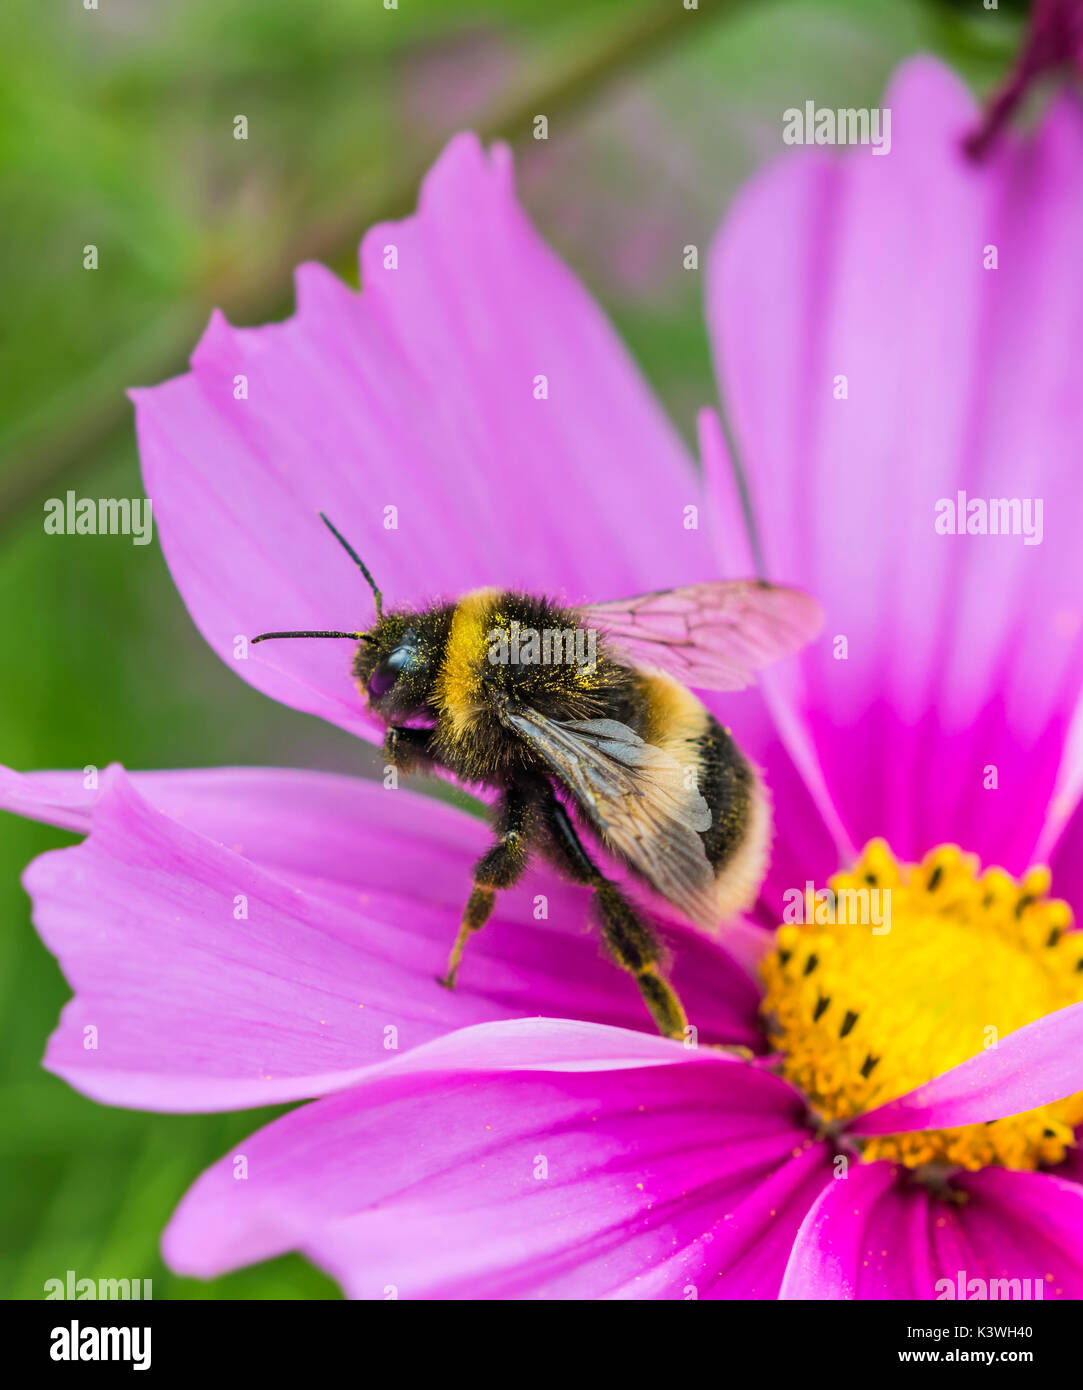 Buff Tailed de abejorros (Bombus terrestris) en un Cosmos bipinnatus rosa flor en verano en West Sussex, Reino Unido. Retrato del abejorro. Copie el espacio. Foto de stock